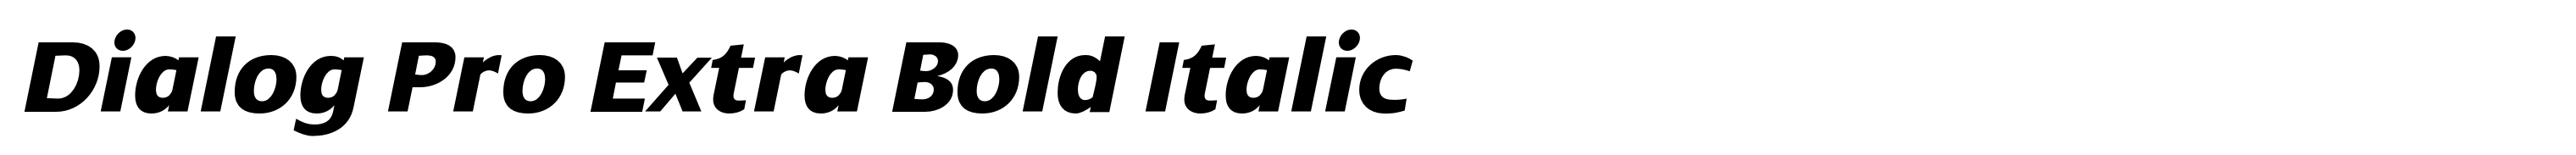 Dialog Pro Extra Bold Italic